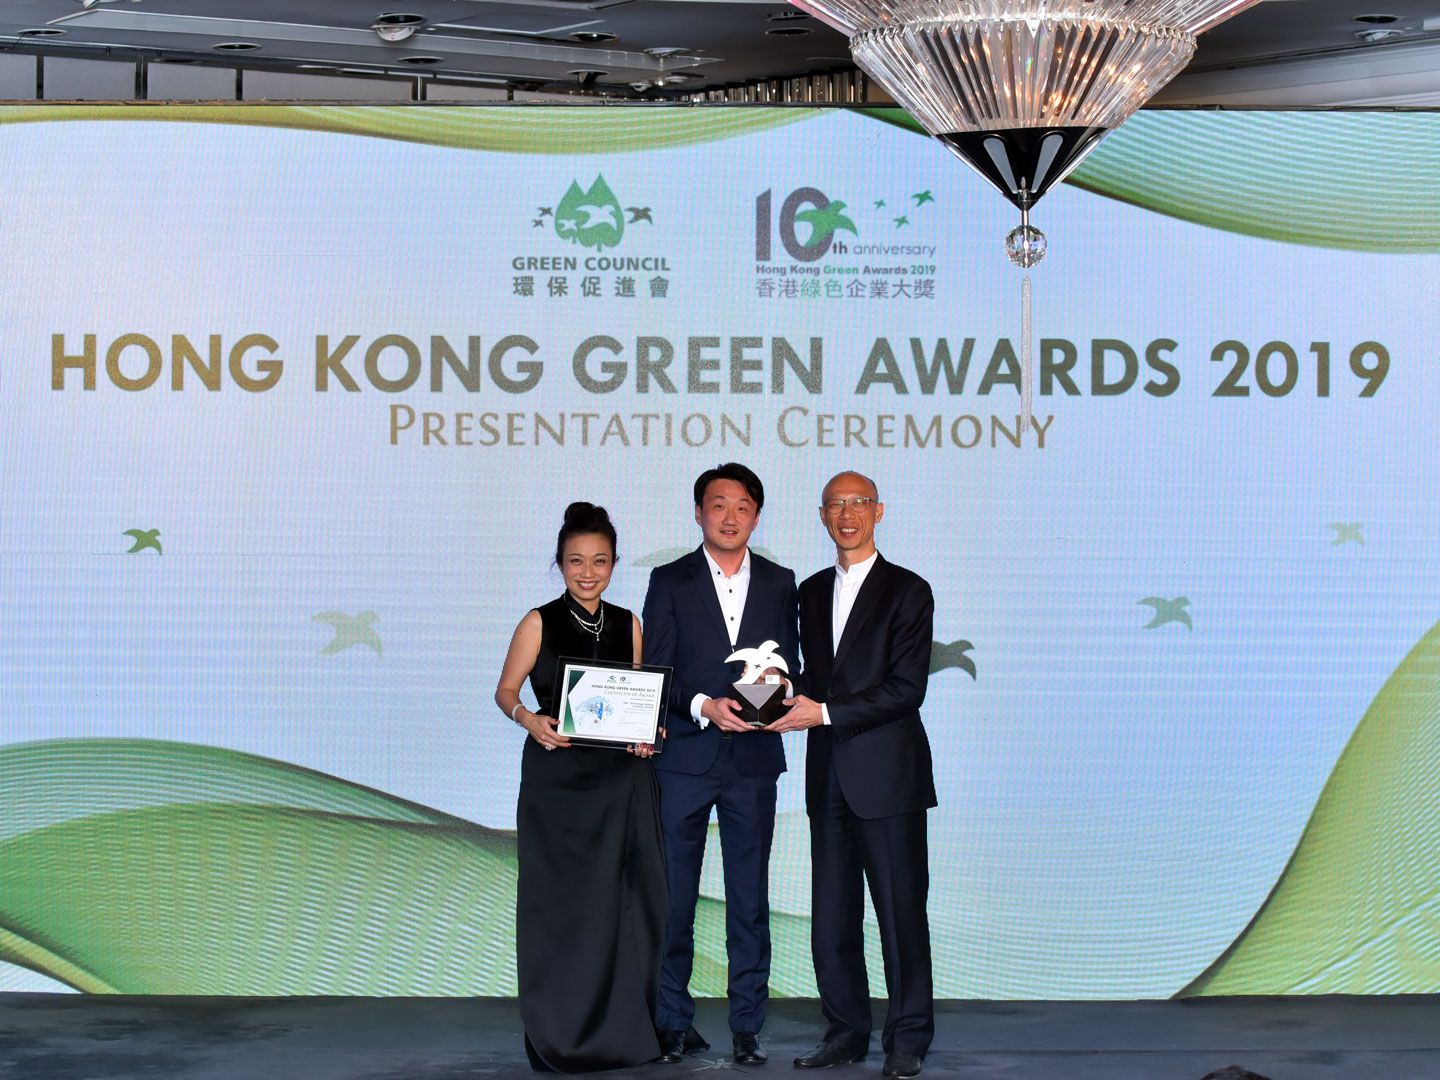 德基科技再次荣获“香港绿色企业大奖2019”－“企业绿色管治奖”